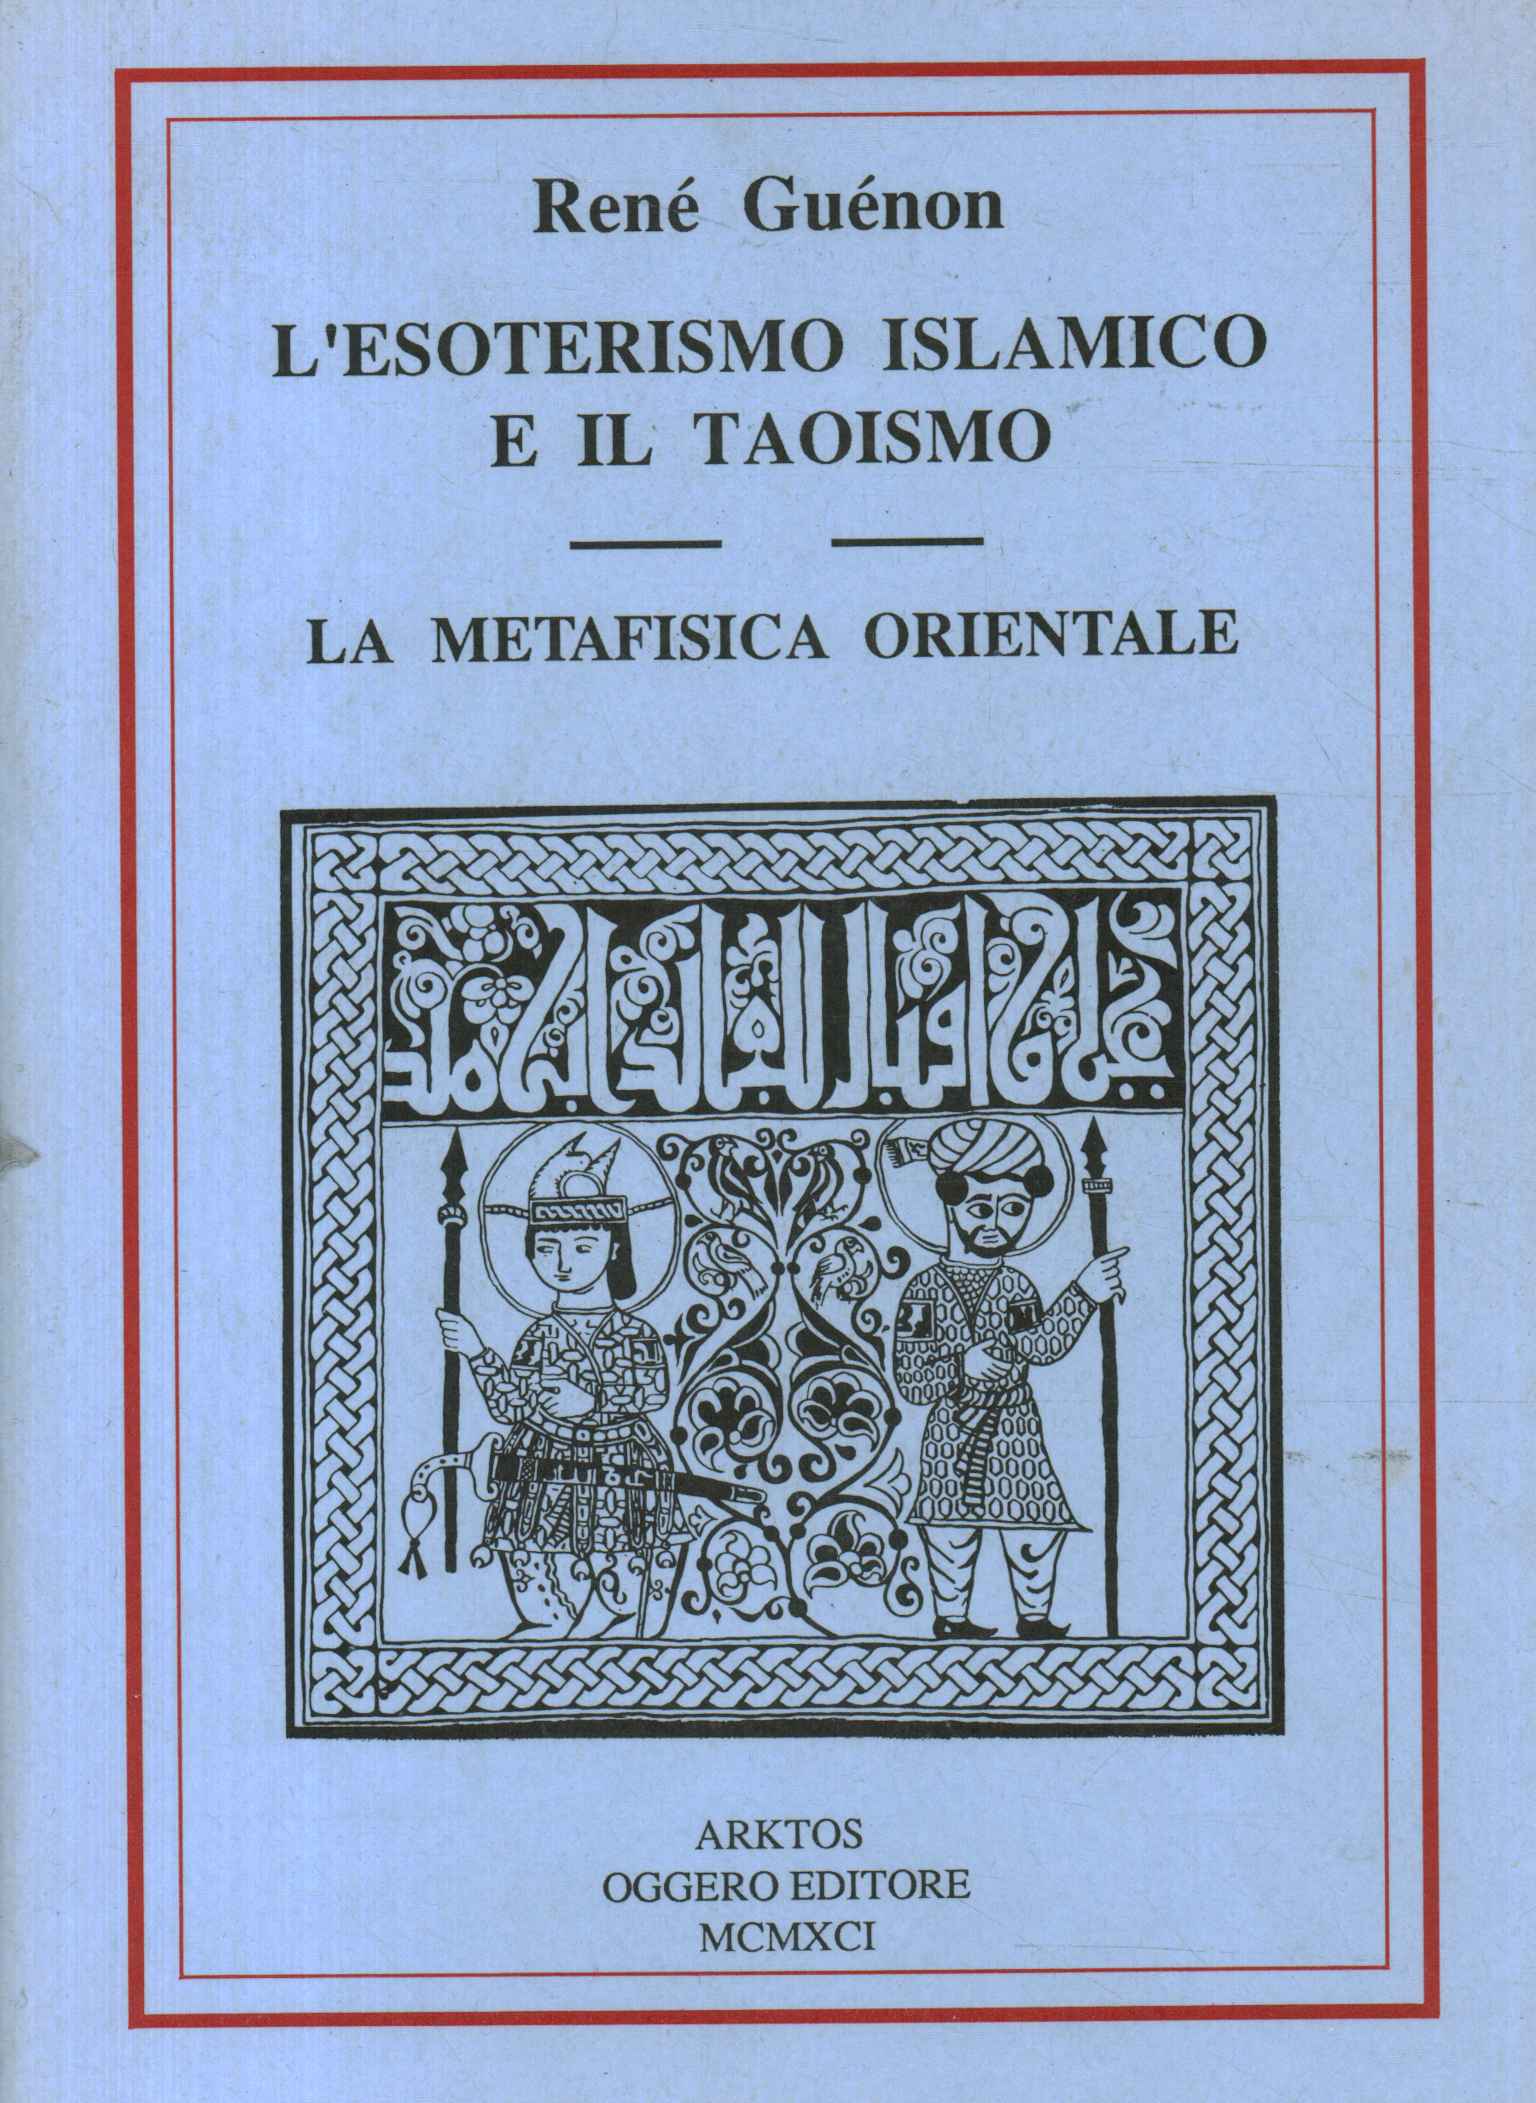 Consideraciones sobre el esoterismo isleño, el esoterismo islámico y el taoísmo